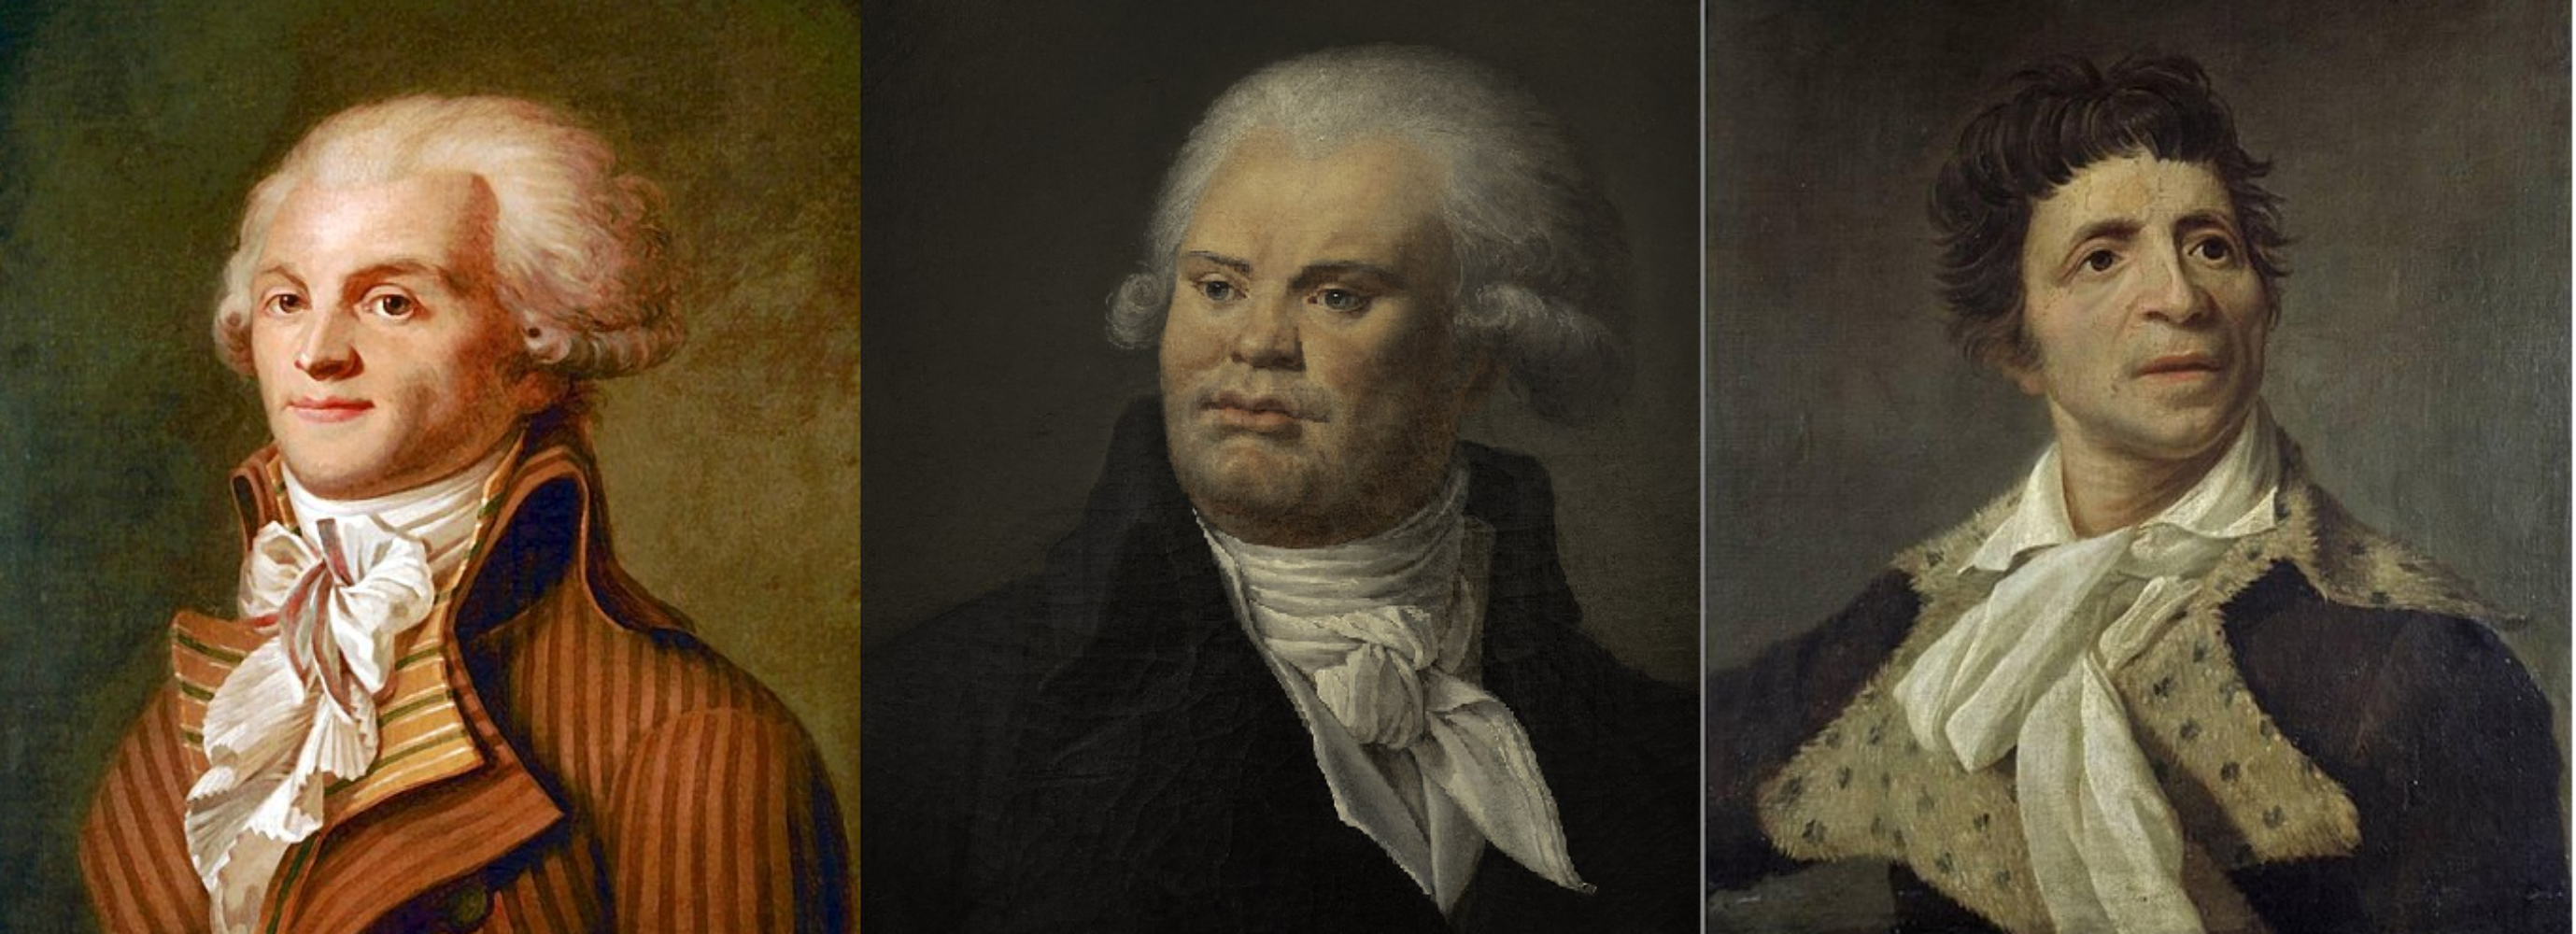 Retrats de Robespierre, Danton, i Marat; liders del partit jacobí revolucionari. Font Musée Carnavelet. París